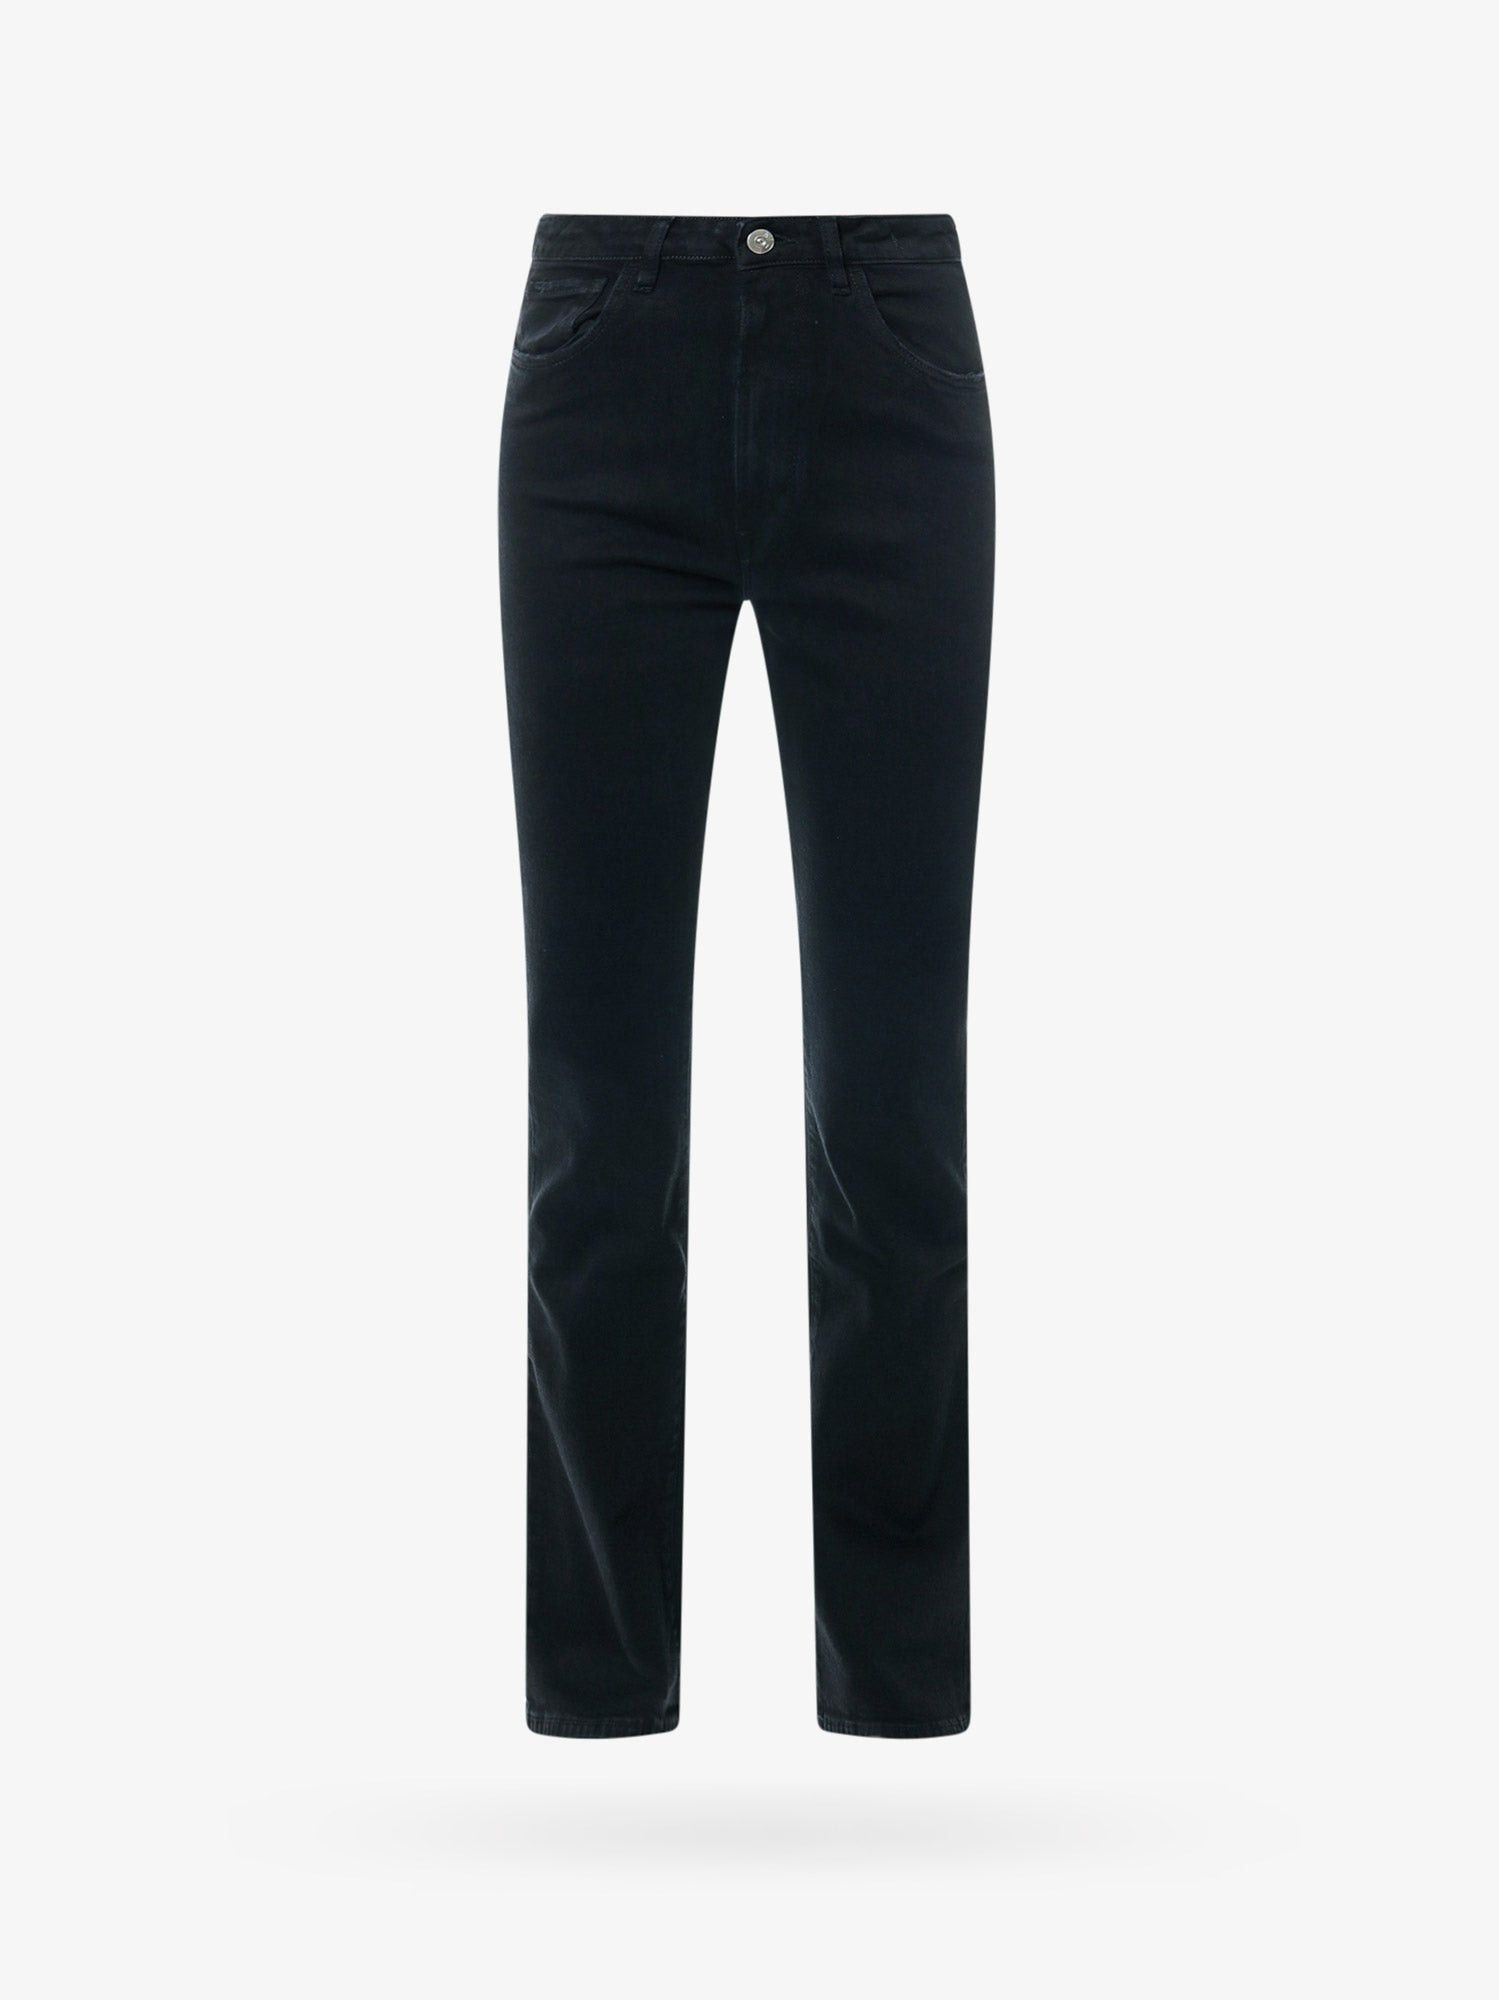 3x1 Trouser Woman Black Pants | Grailed